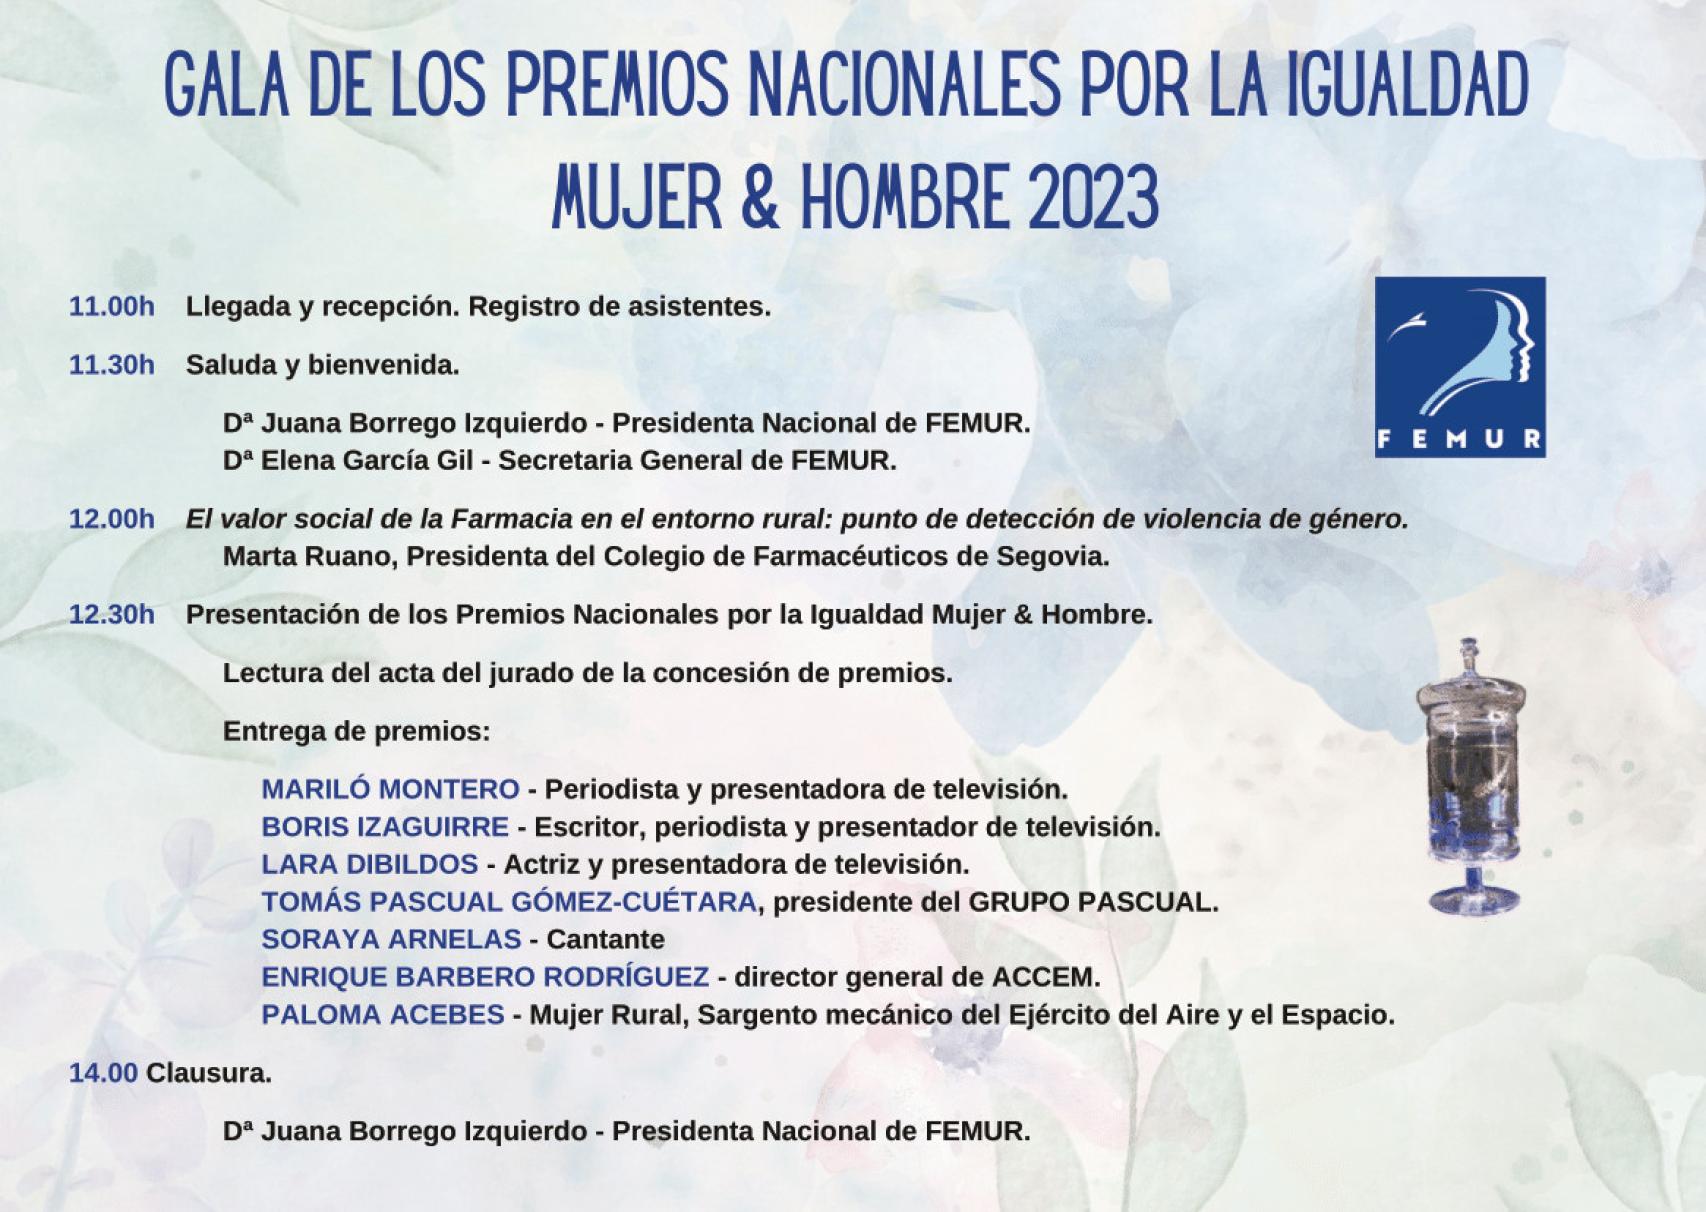 Programa de la gala de los Premios Nacionales por la Igualdad Mujer & Hombre 2023